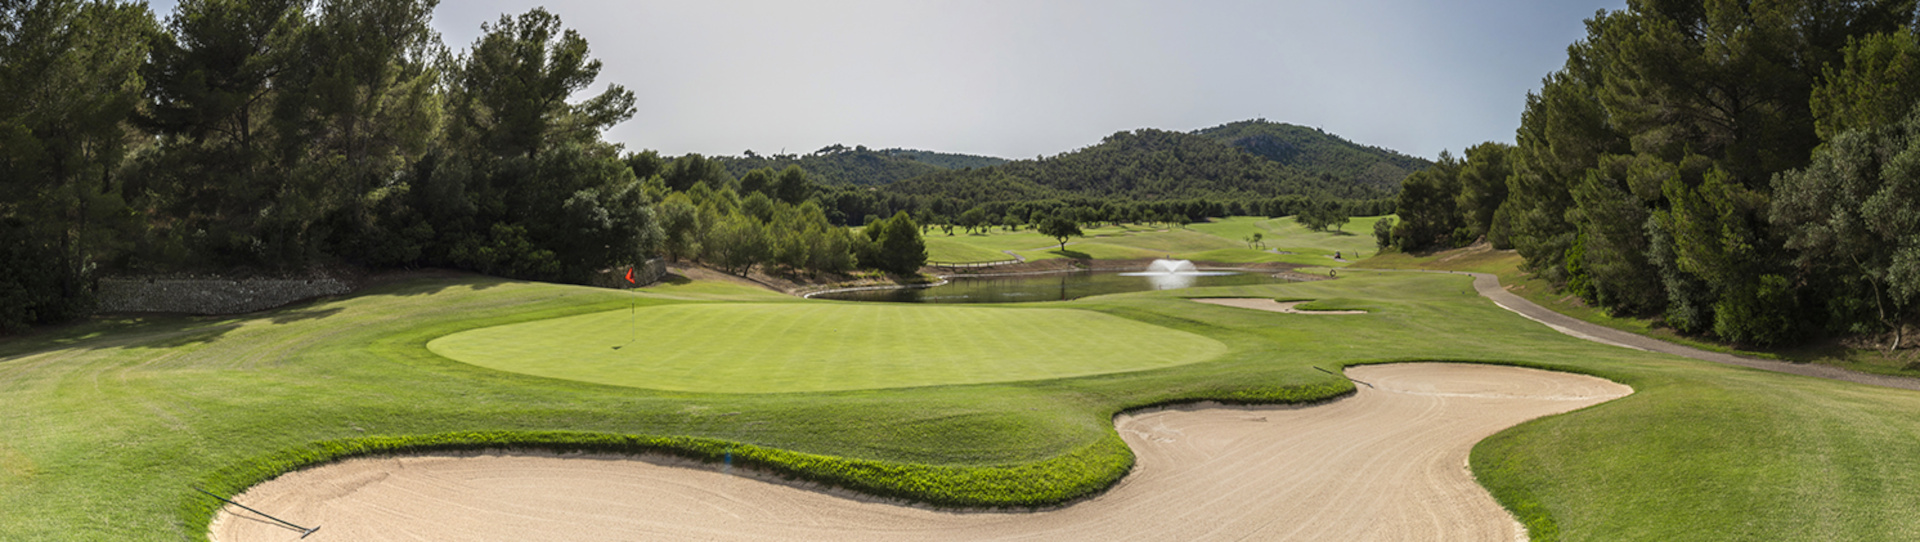 Spain golf courses - Son Quint Golf Course - Photo 1